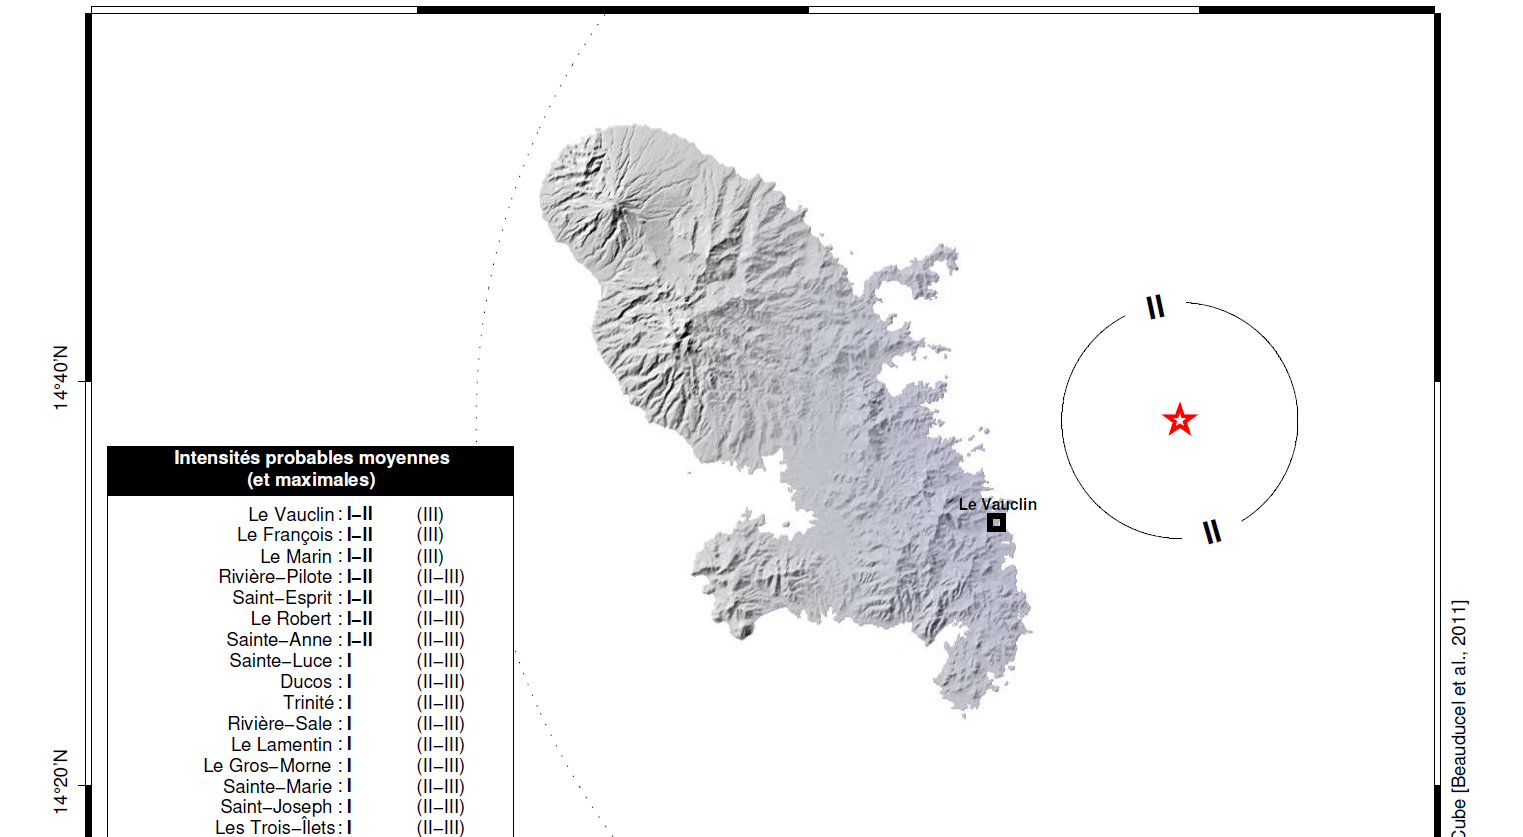     Un léger séisme enregistré avec un épicentre au nord-est du Vauclin

